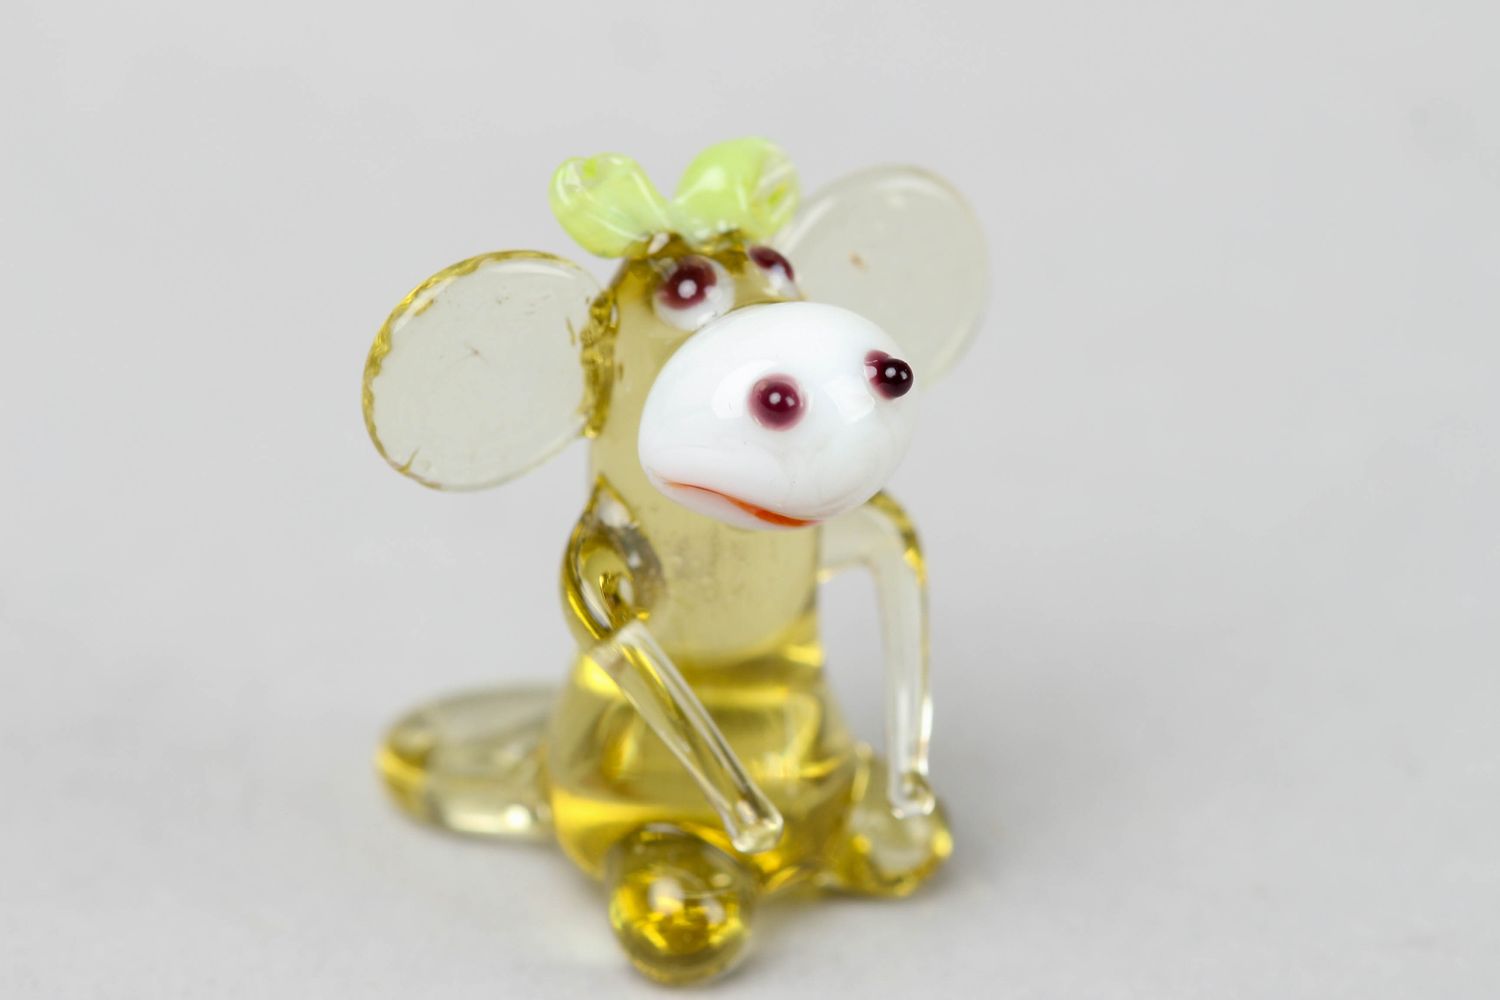 Стеклянная маленькая фигурка мышки в технике лэмпворк фото 1